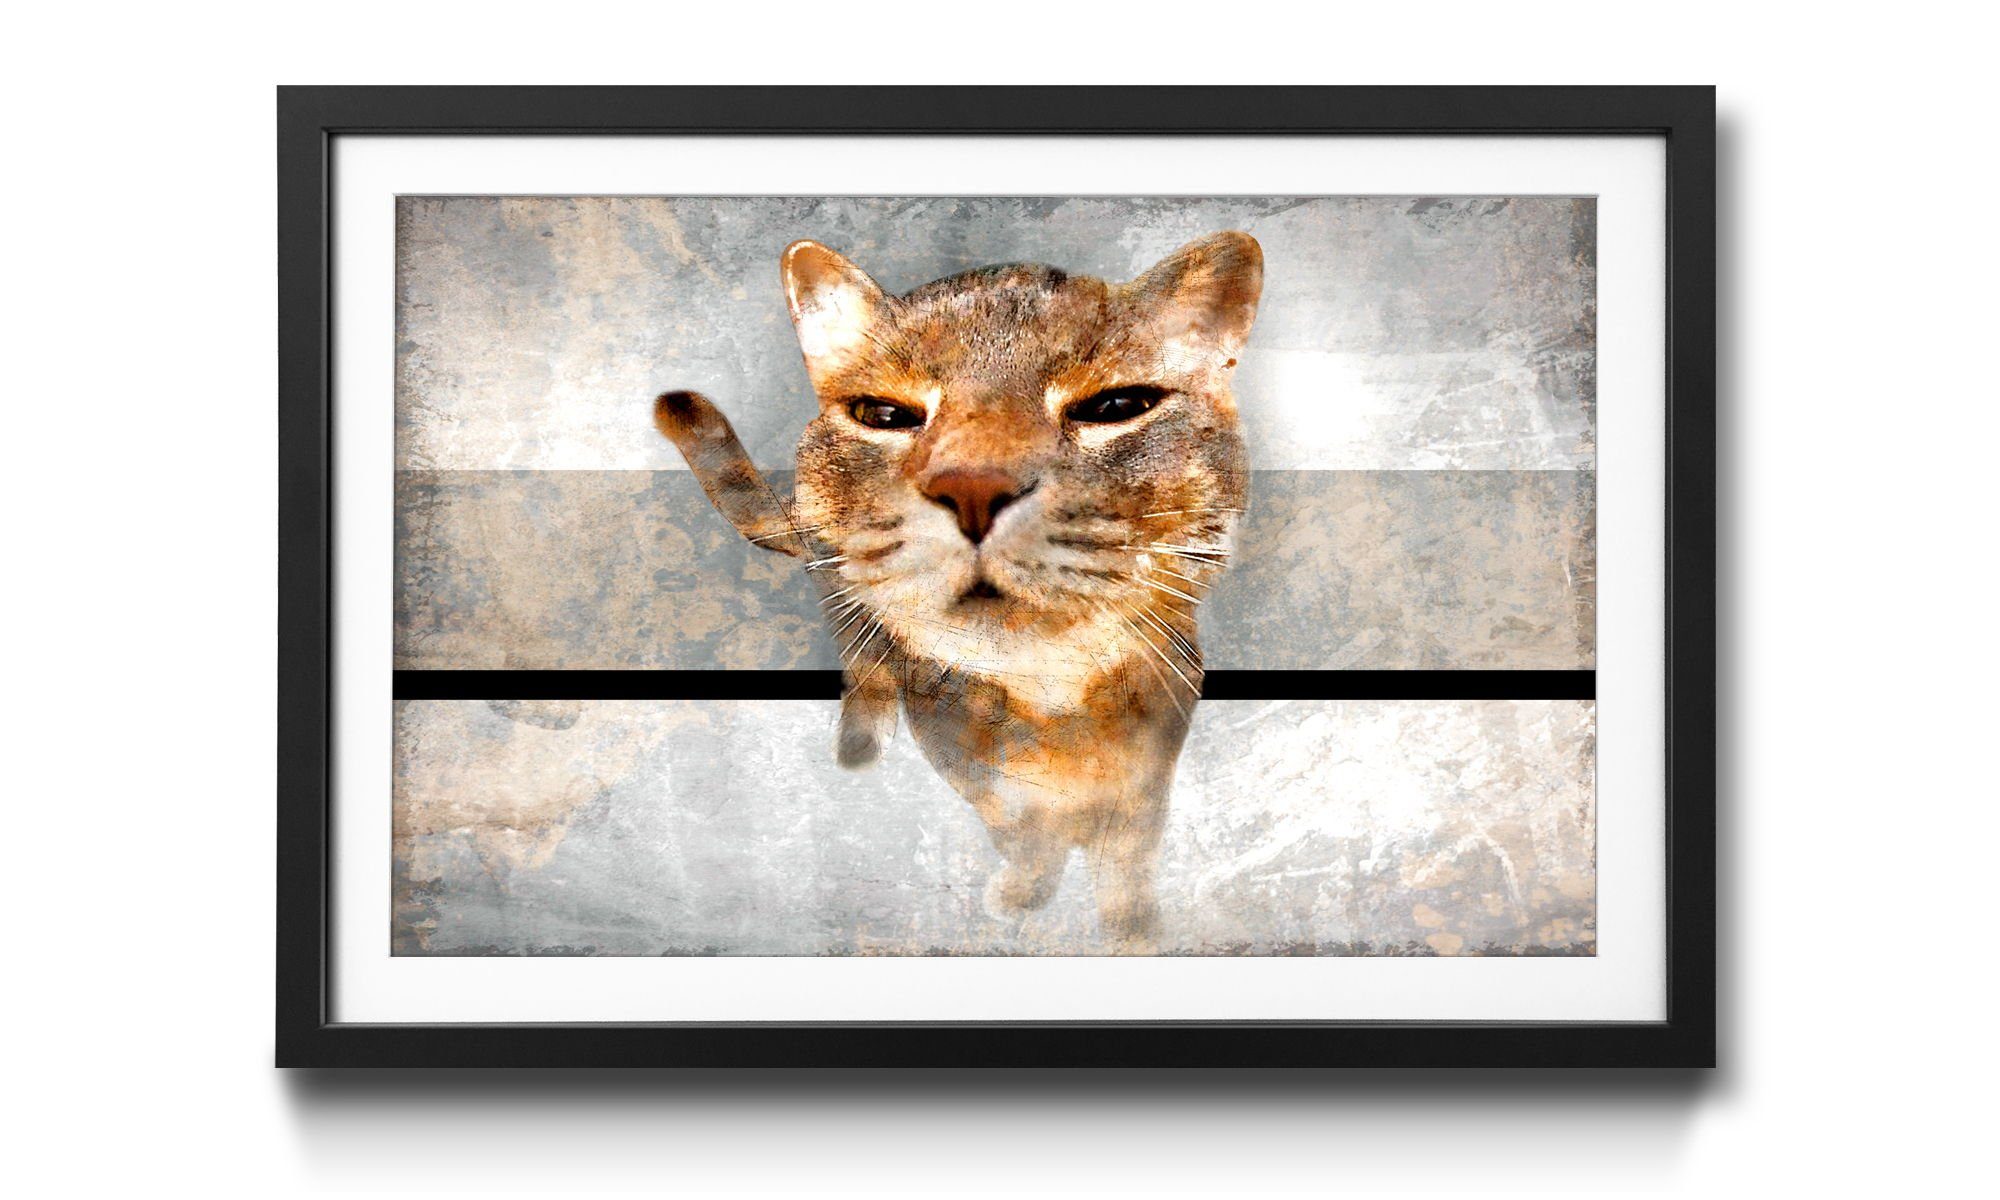 WandbilderXXL Kunstdruck Smooth Cat, Katze, Wandbild, in 4 Größen erhältlich